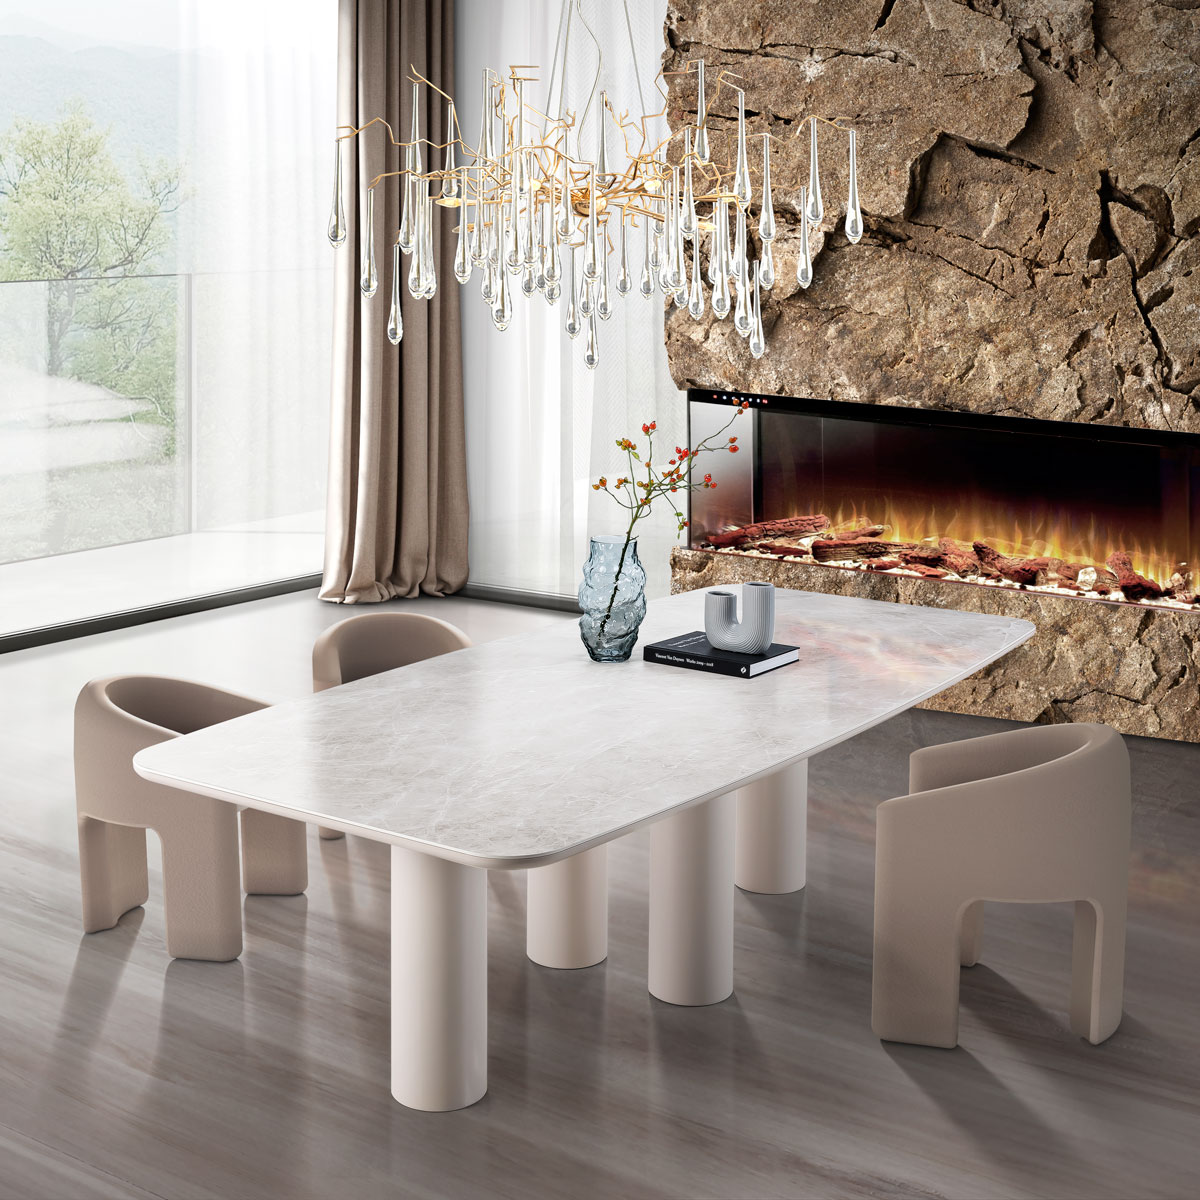 Bellagio ceramic dining table | Remo Meble